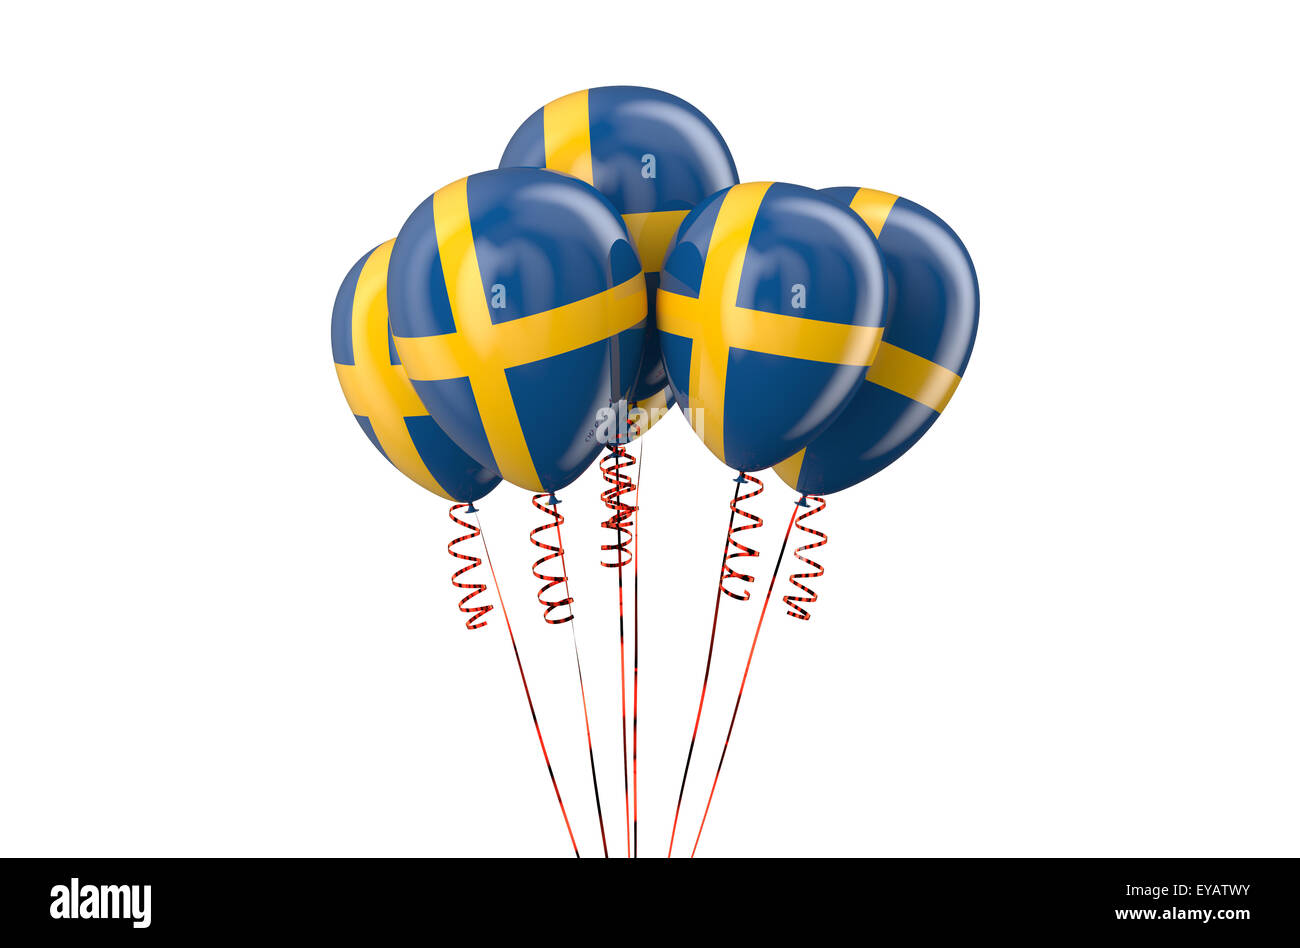 Ballons de fête patriotique de la Suède, concept isolé sur fond blanc Banque D'Images